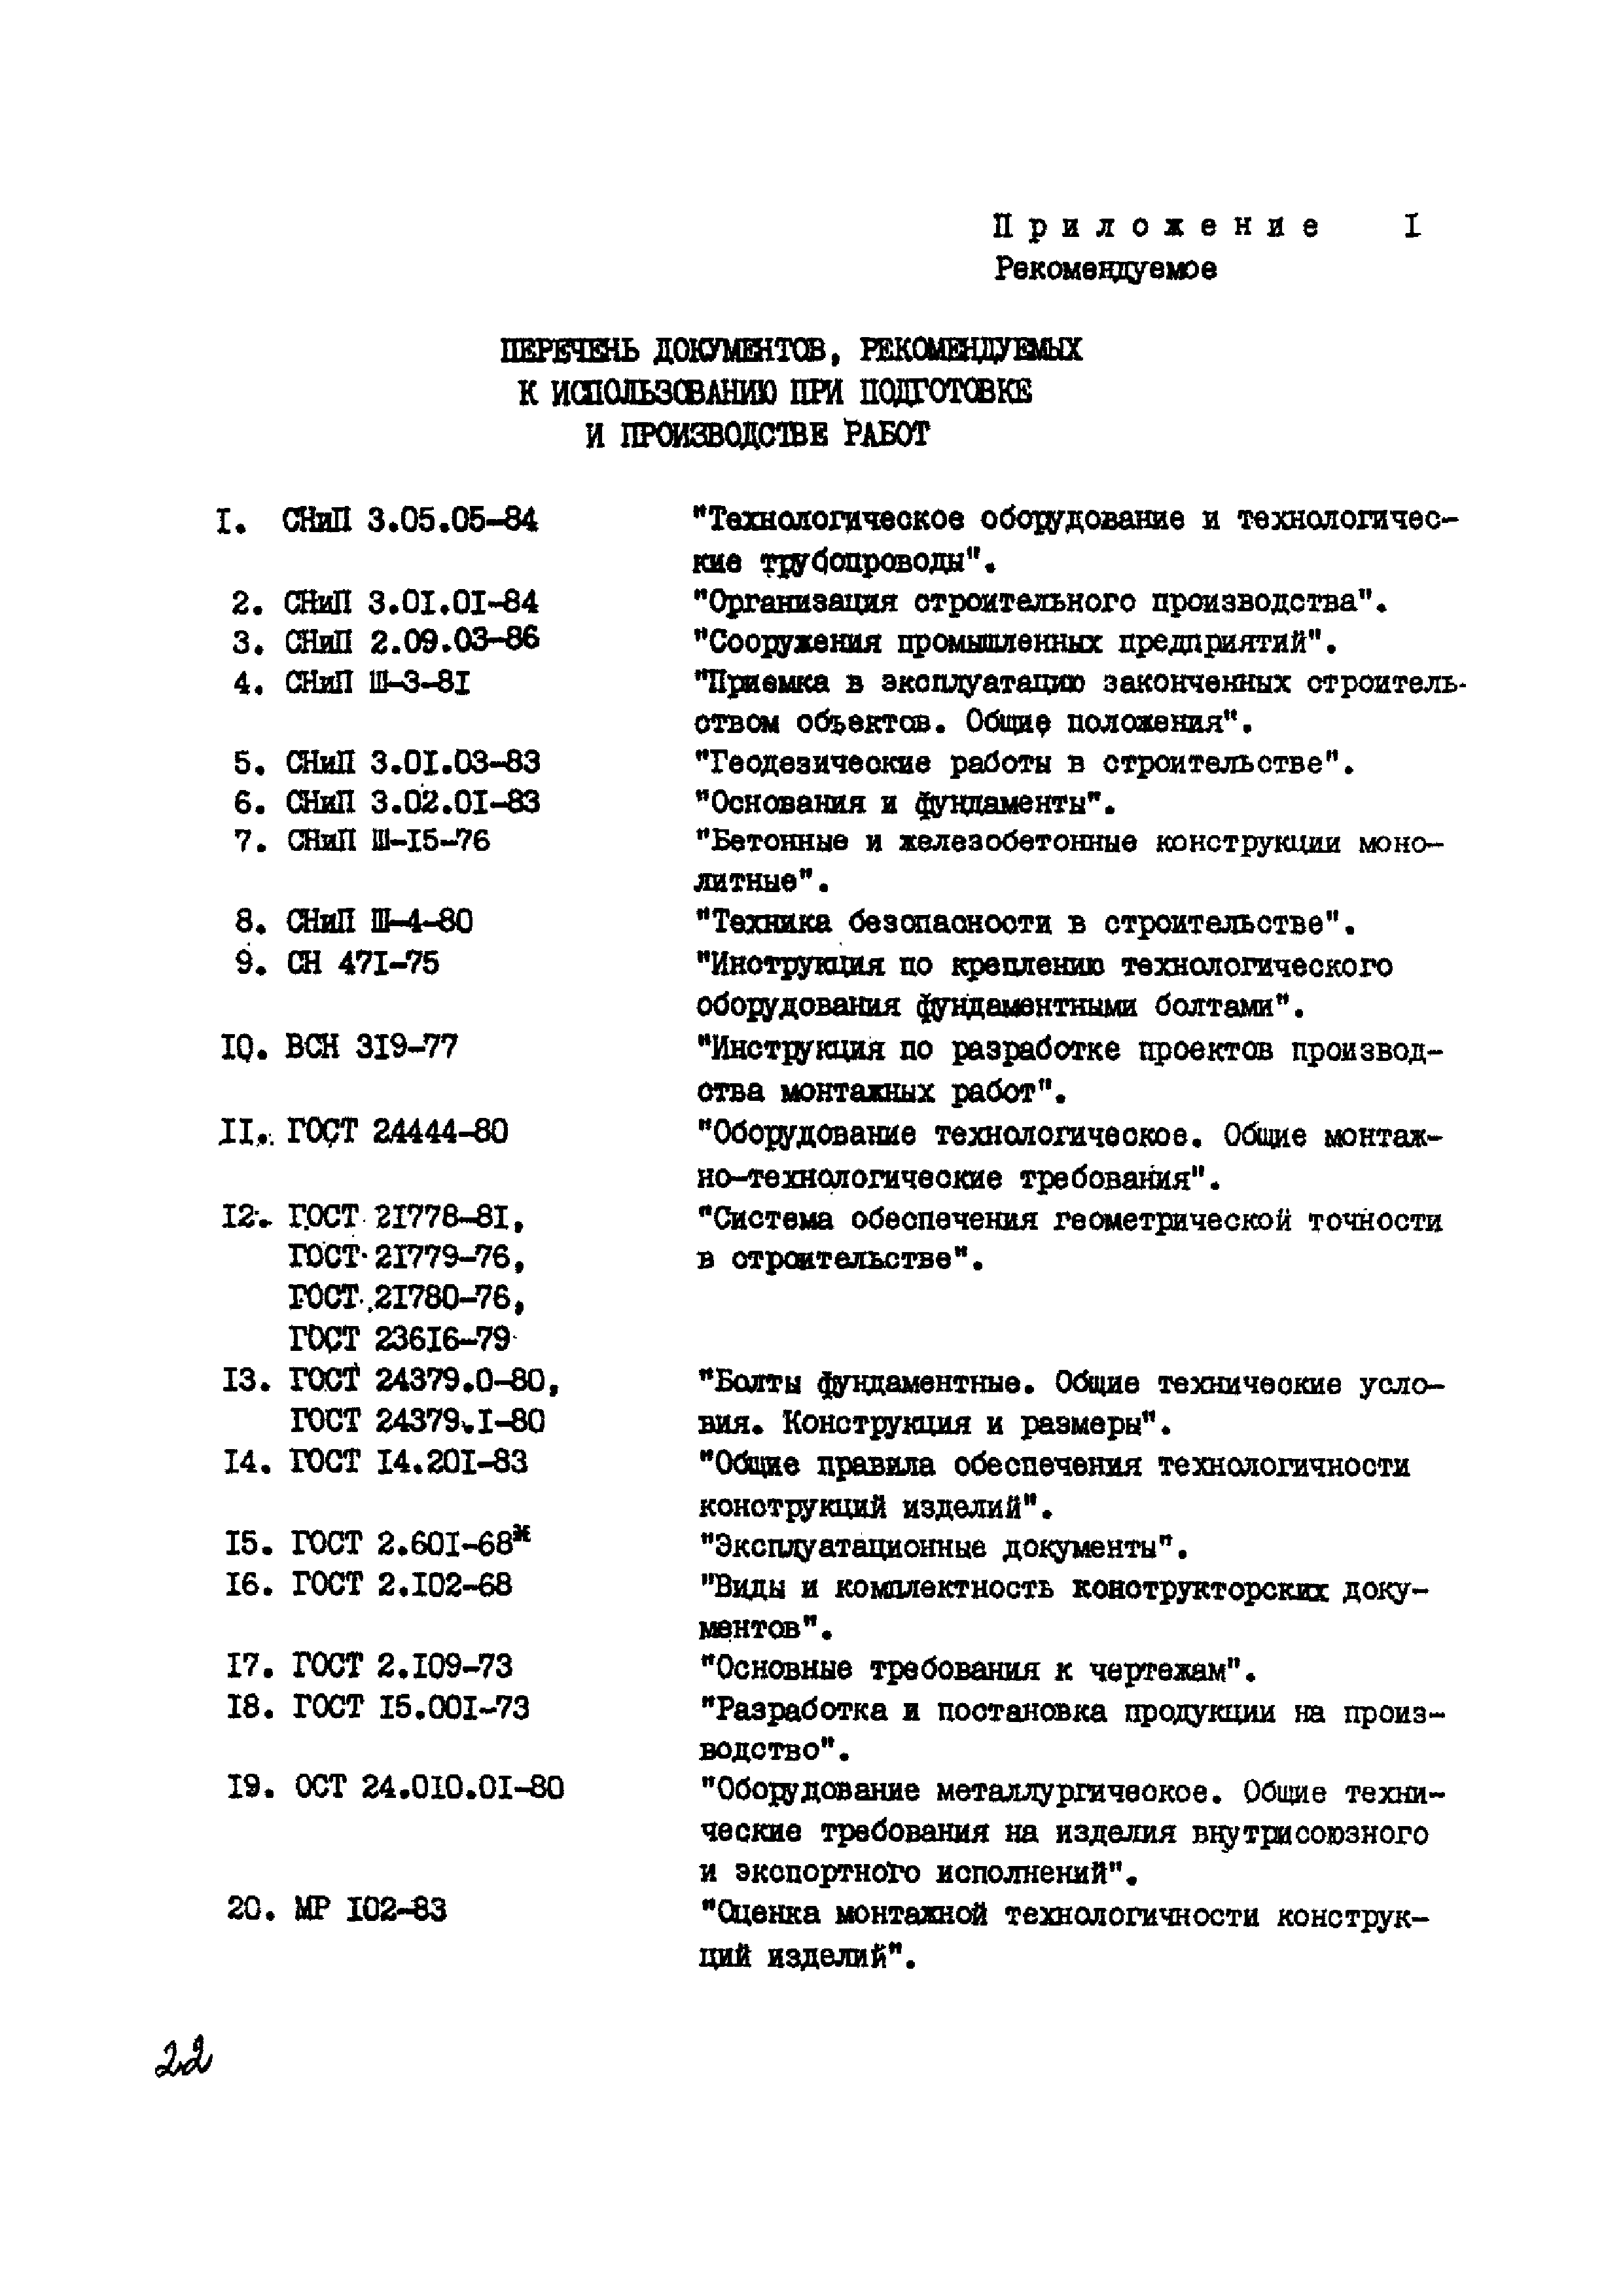 ВСН 361-85